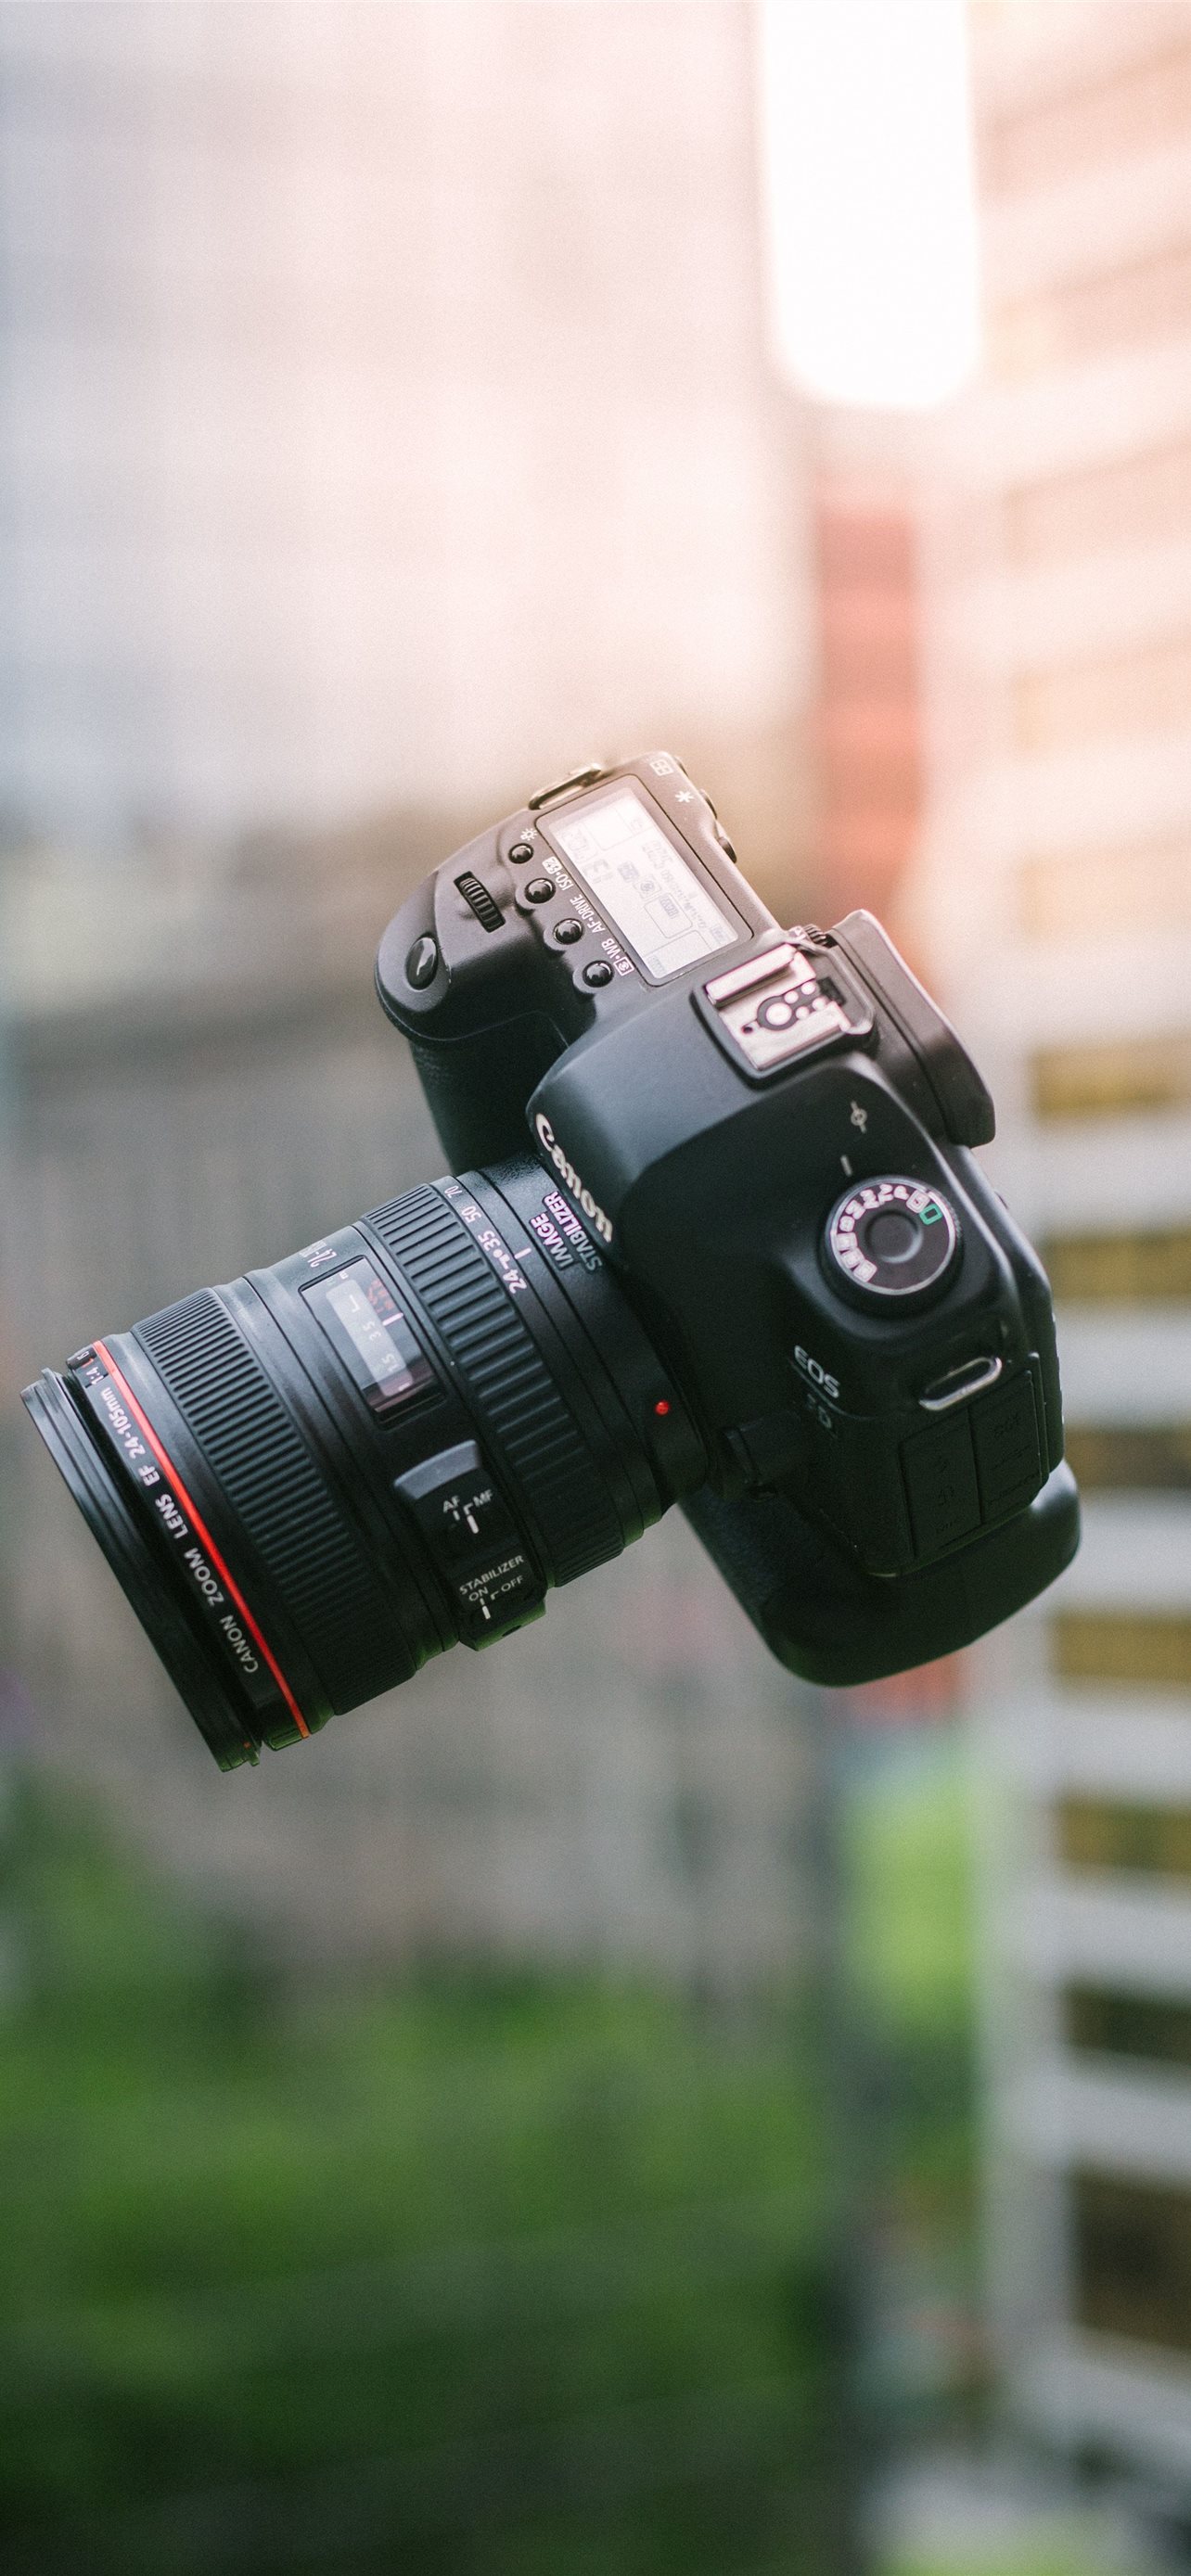 Máy ảnh Canon EOS 6D: Chất lượng đỉnh cao và khả năng tùy chỉnh của máy ảnh Canon EOS 6D đang chờ đón bạn để khám phá. Tận hưởng màu sắc sống động, độ phân giải cao và khả năng chụp ảnh tuyệt vời với máy ảnh đẳng cấp này.